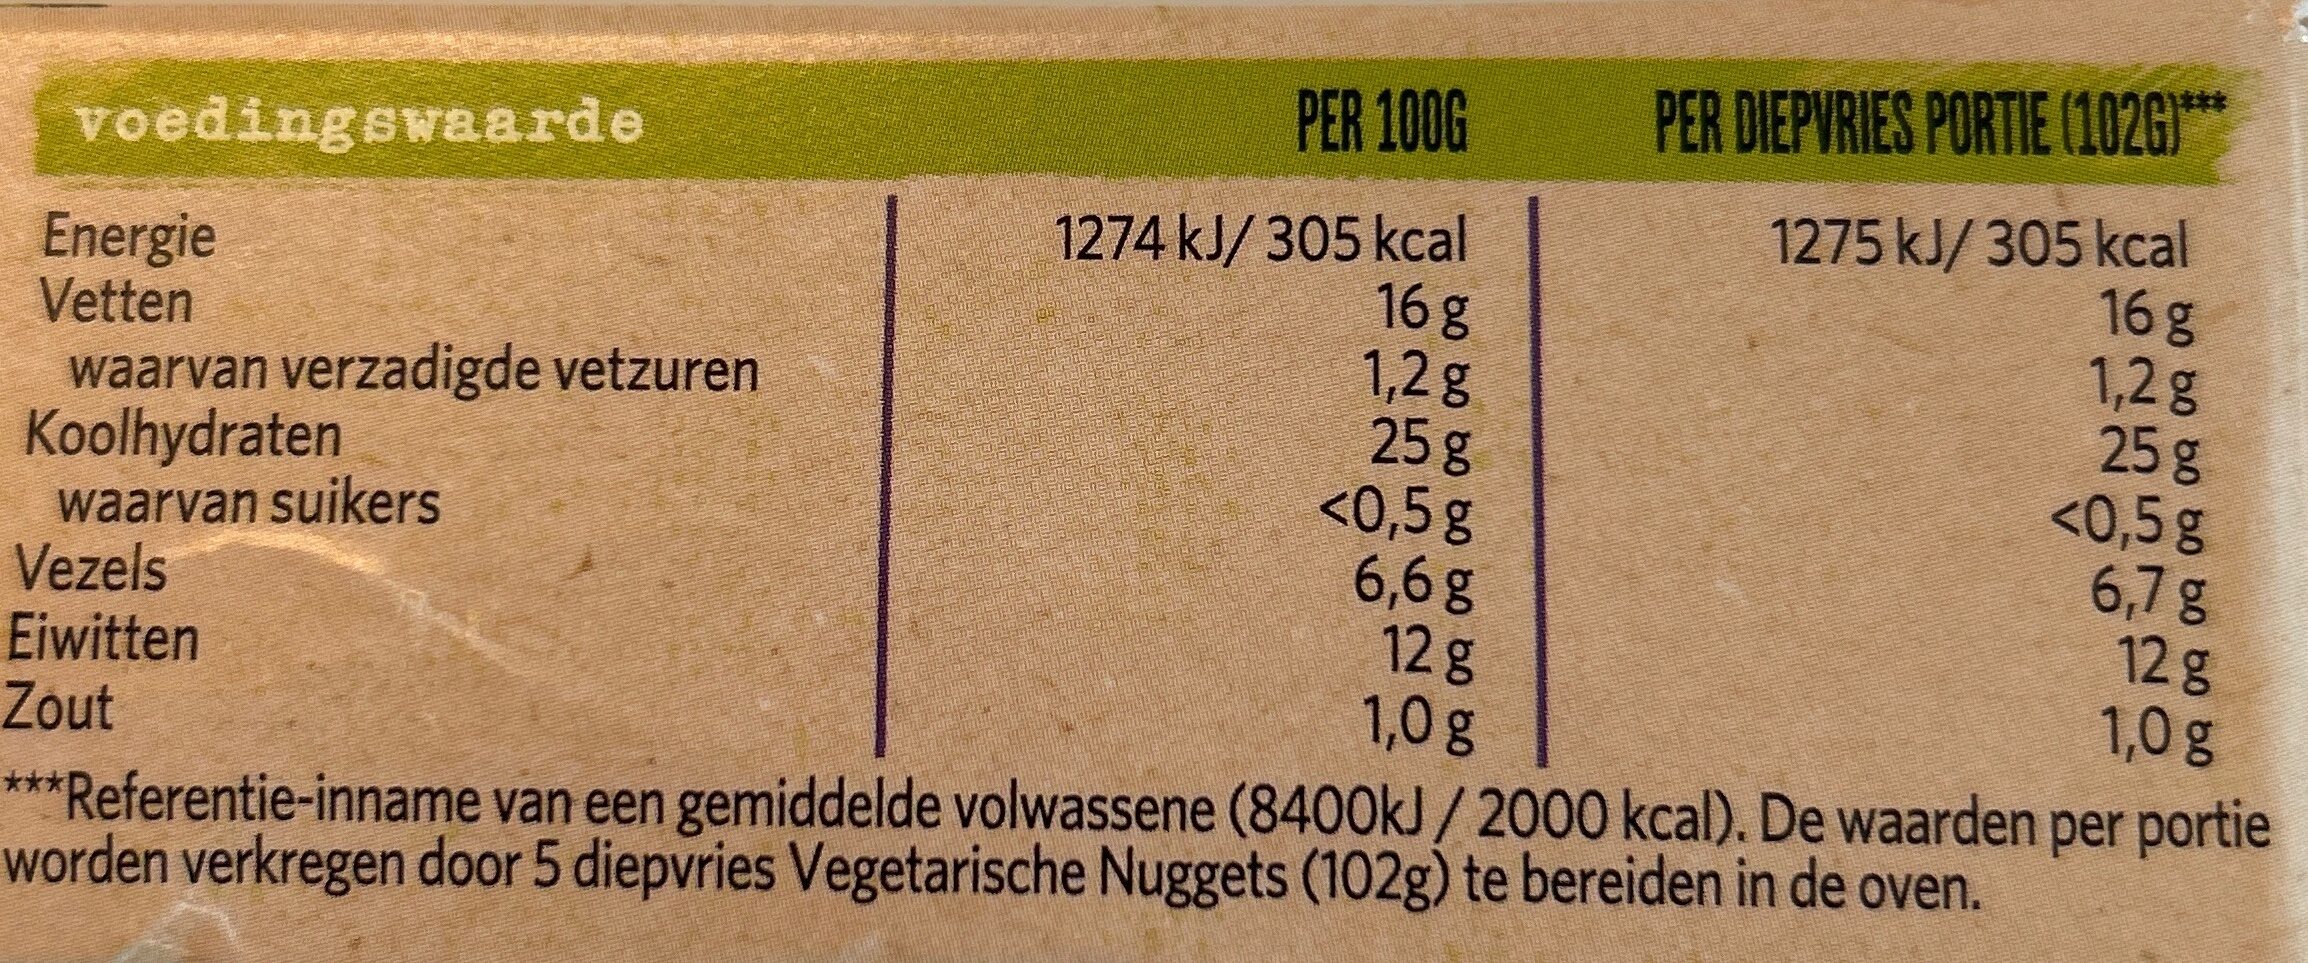 Vegetarische nuggets - Voedingswaarden